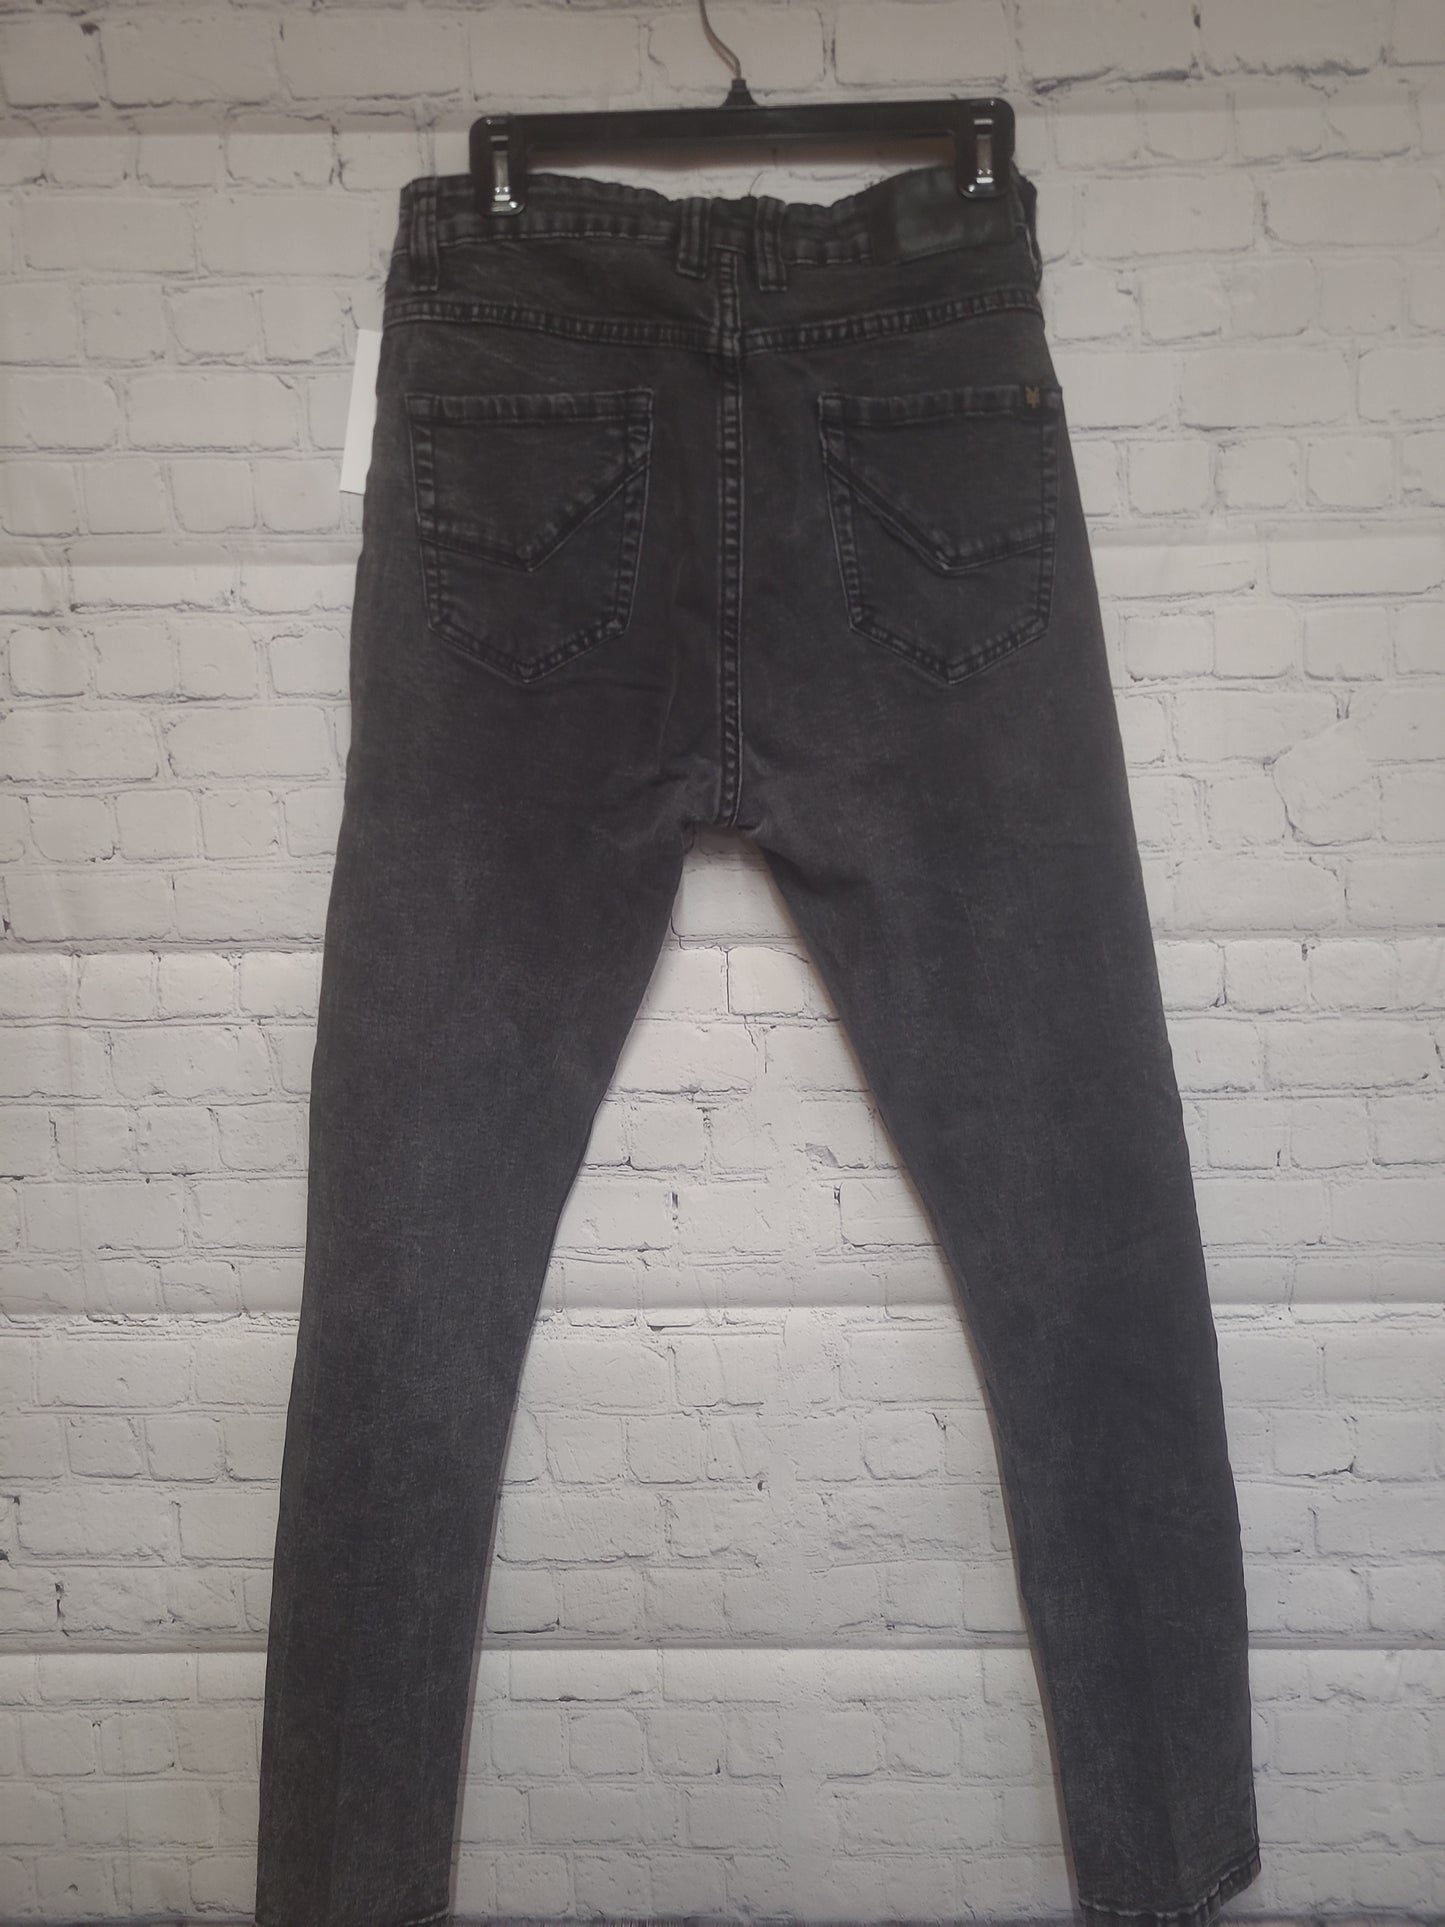 Zoo York Men's Skinny Stretch Jeans Dark Washed - Size 32 x 31